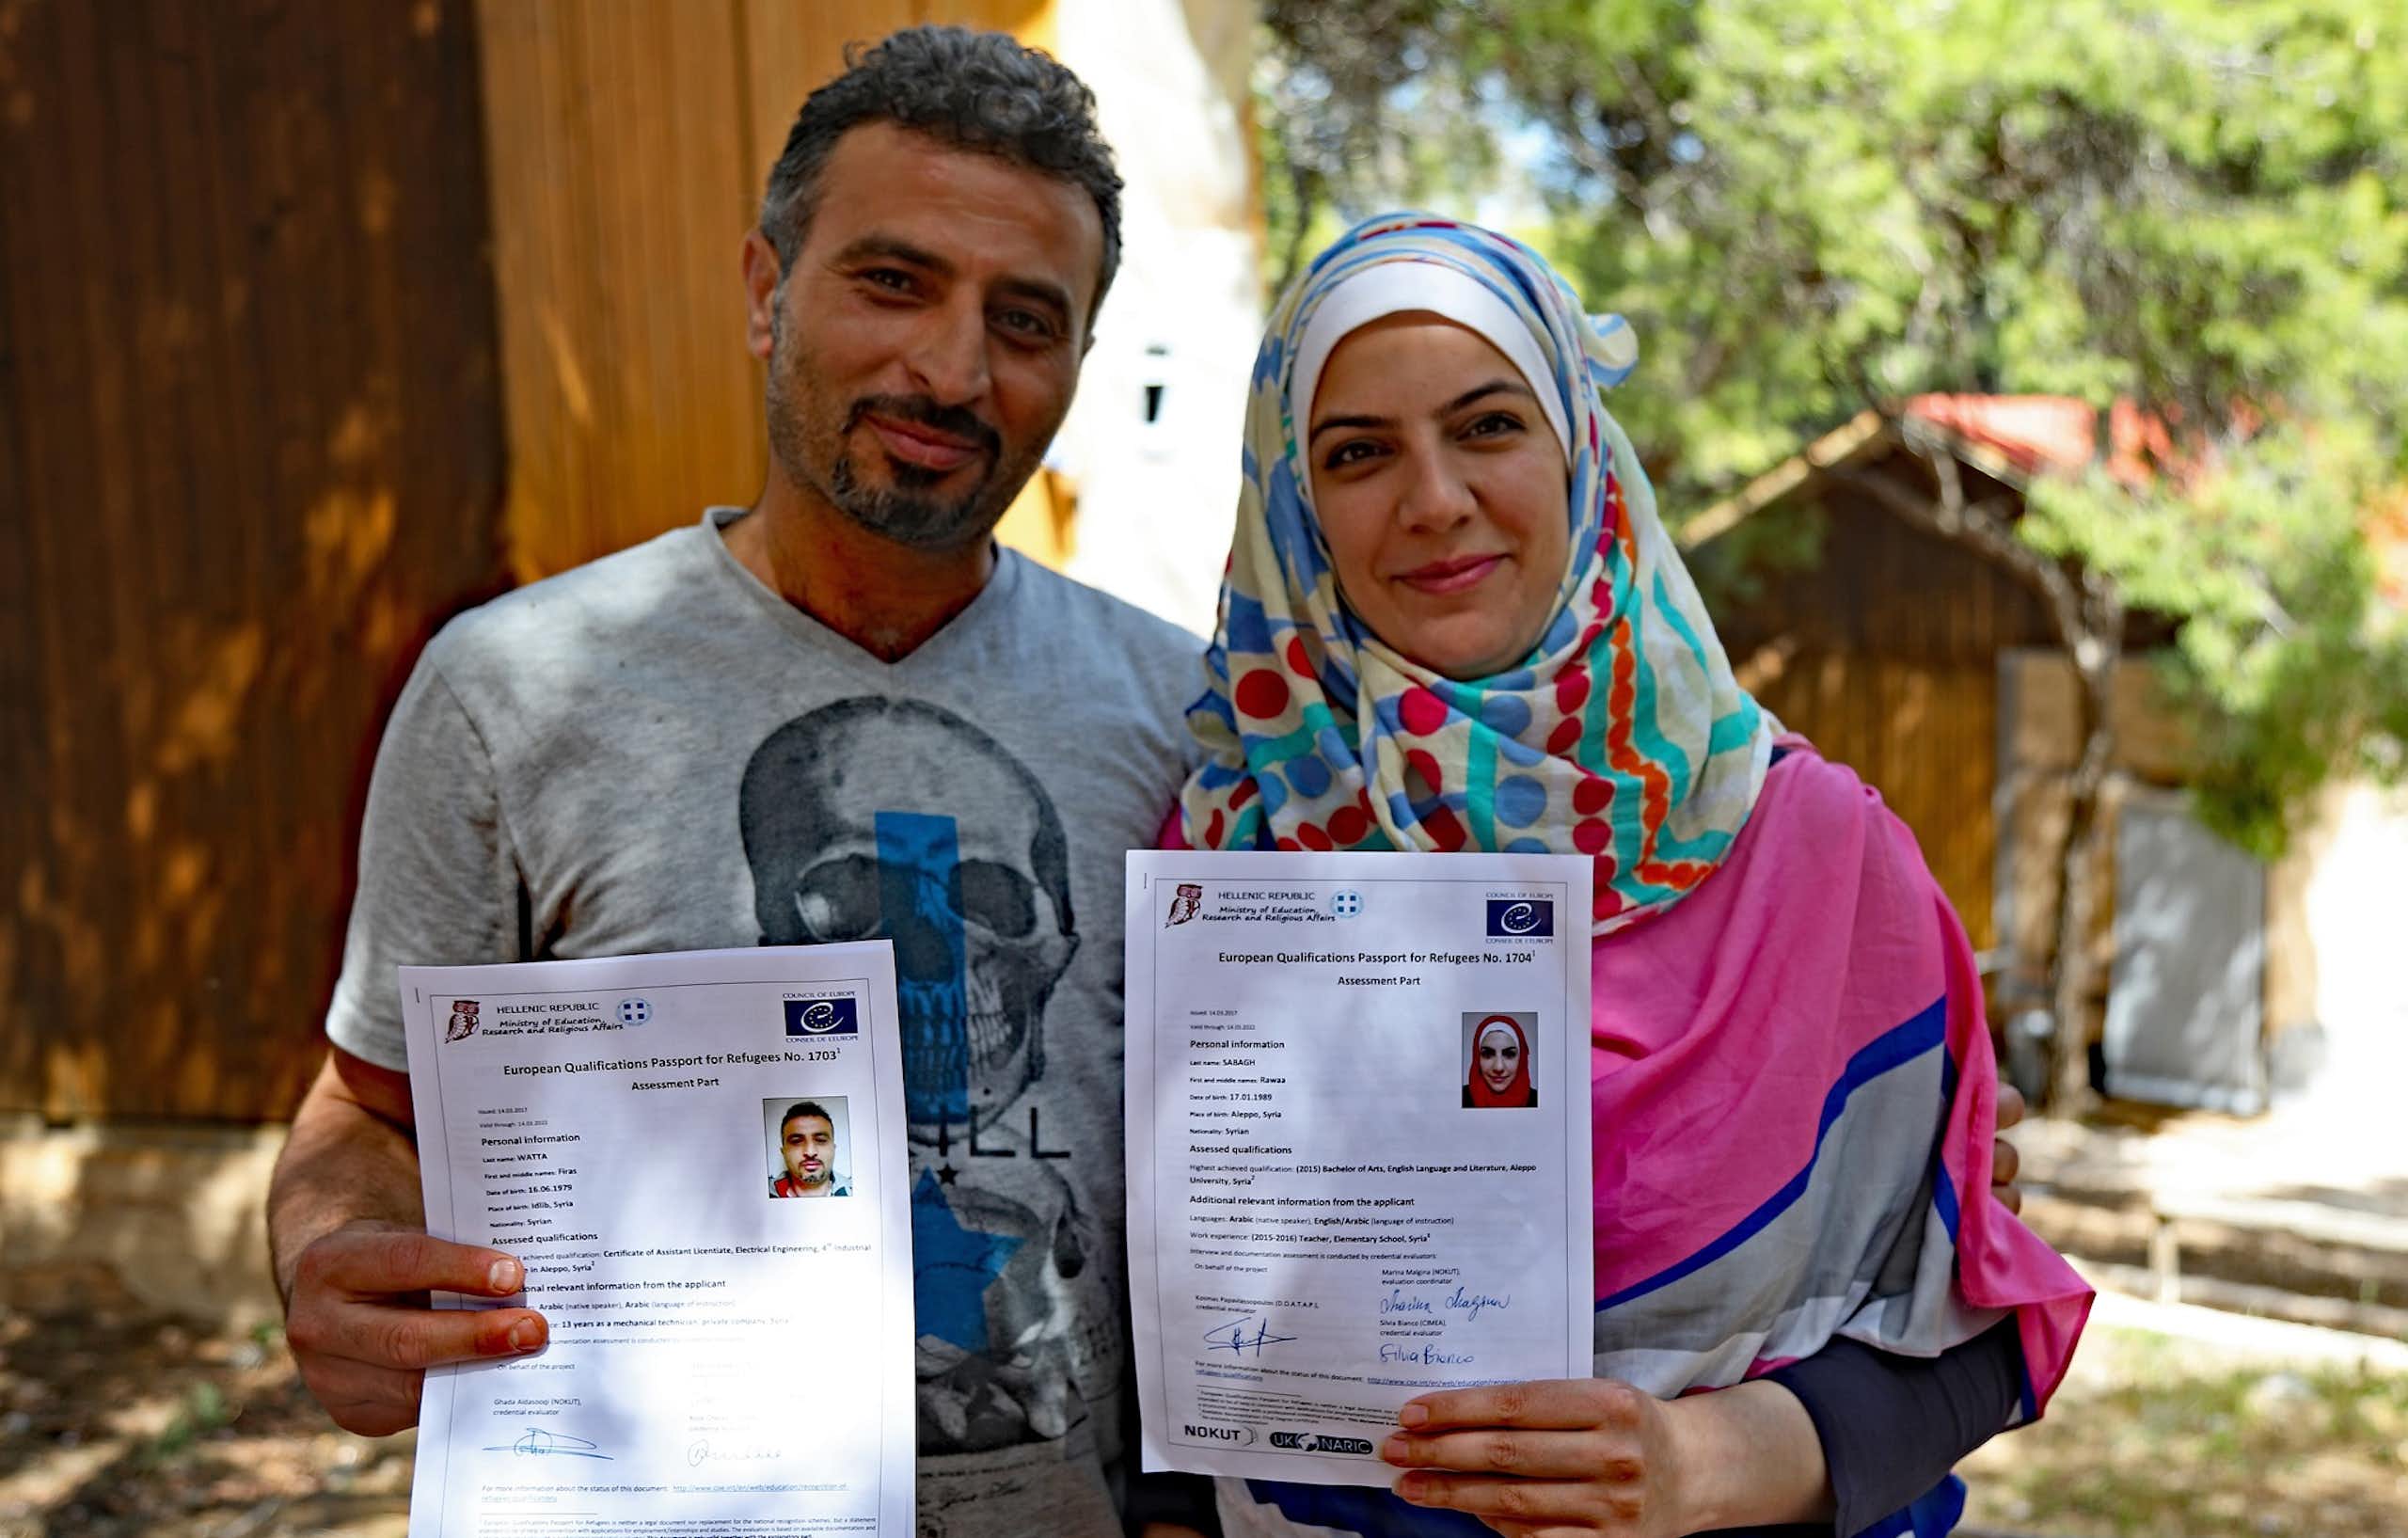 Deux réfugiés montrent leurs passeports européens des qualifications pour les réfugiés.